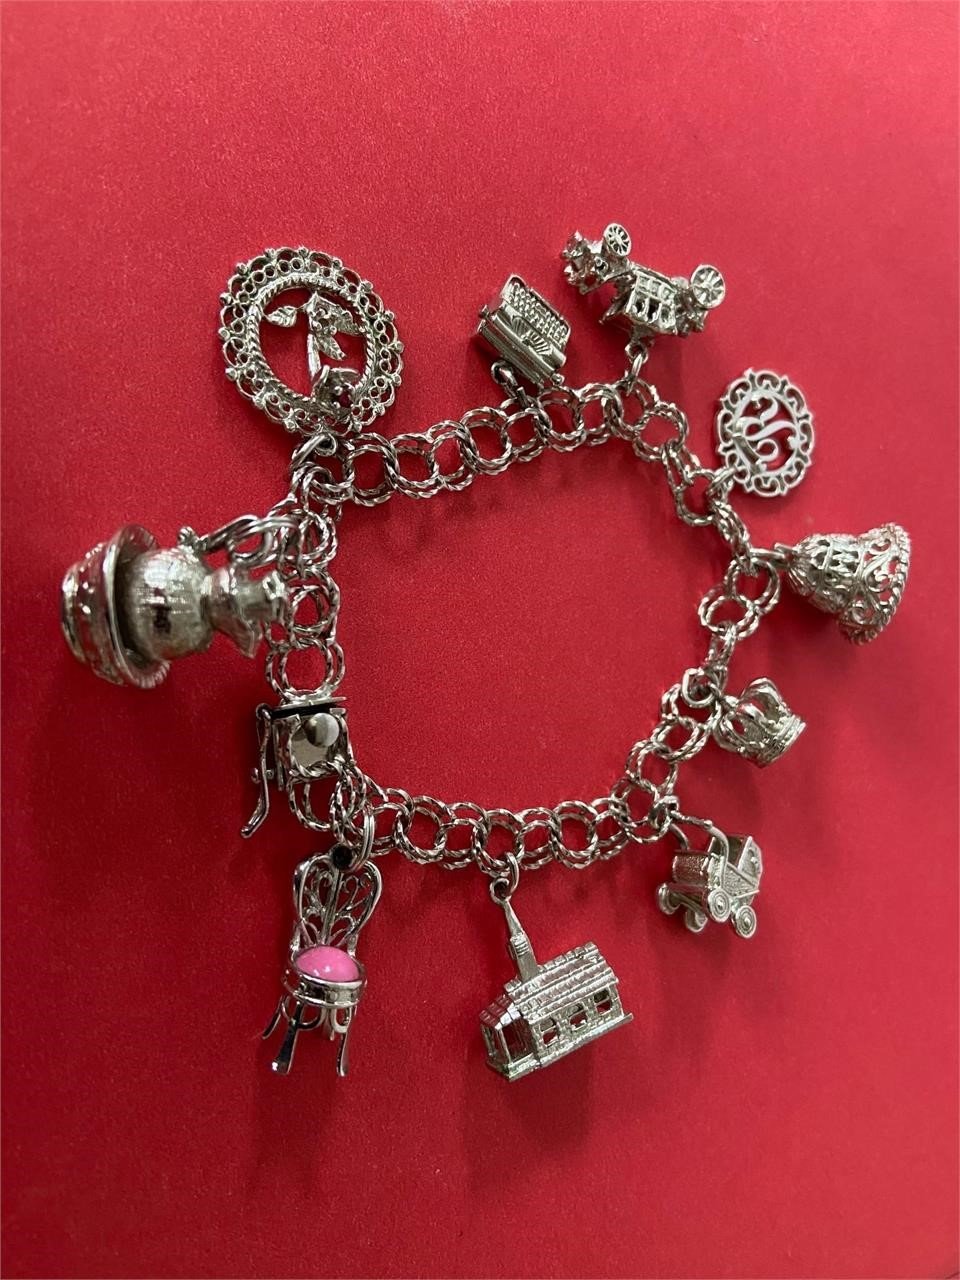 Vintage Silver/Sterling Silver 10 Charm Bracelet